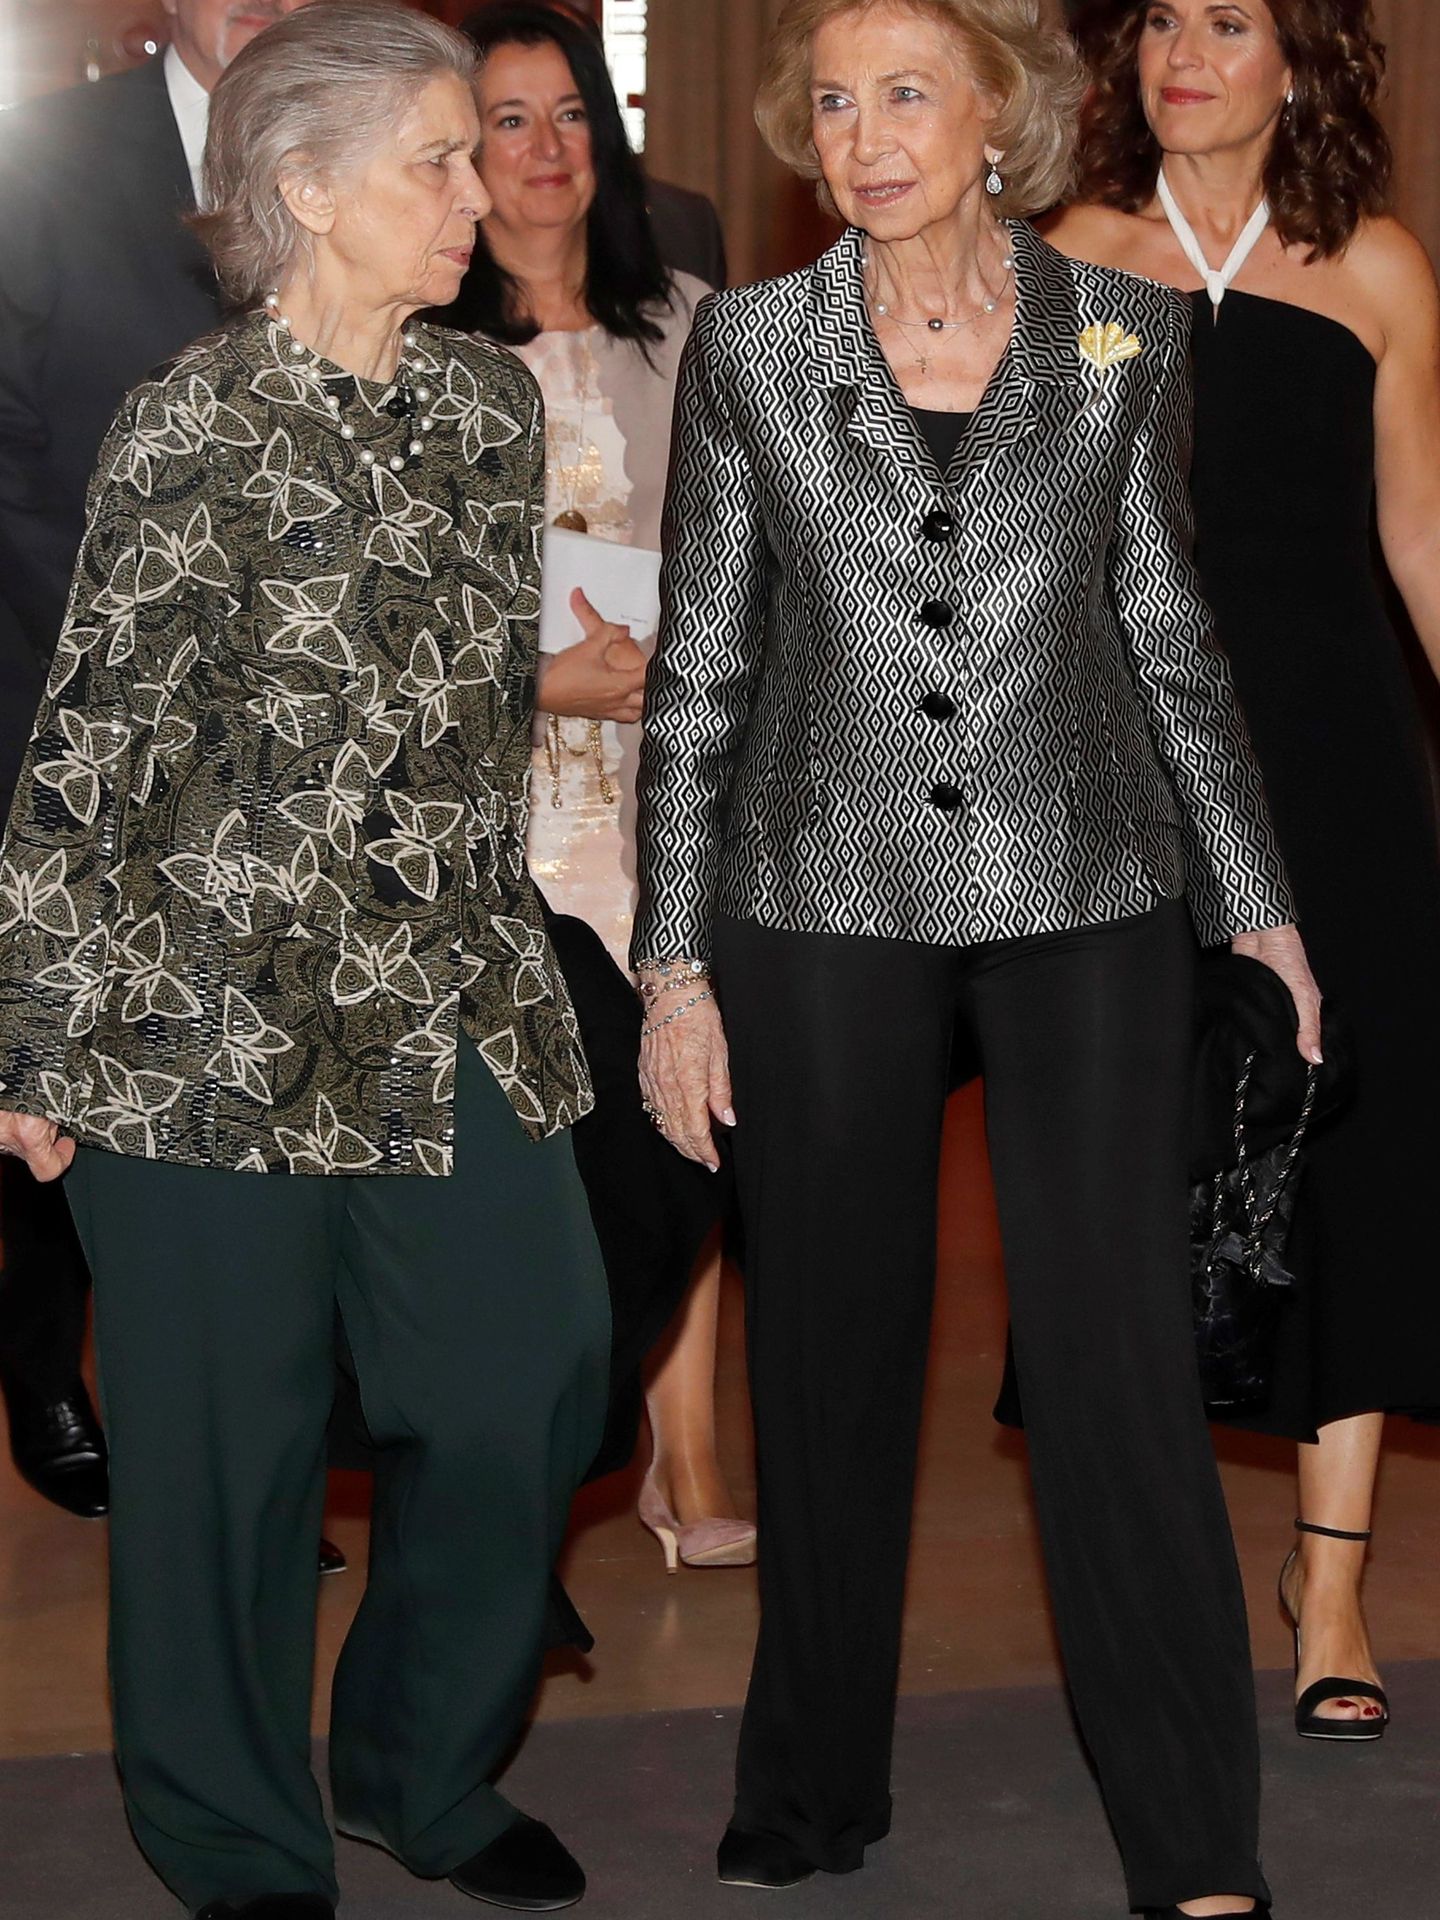 La reina Sofía e Irene de Grecia, en los premios de pintura BMW. (EFE)